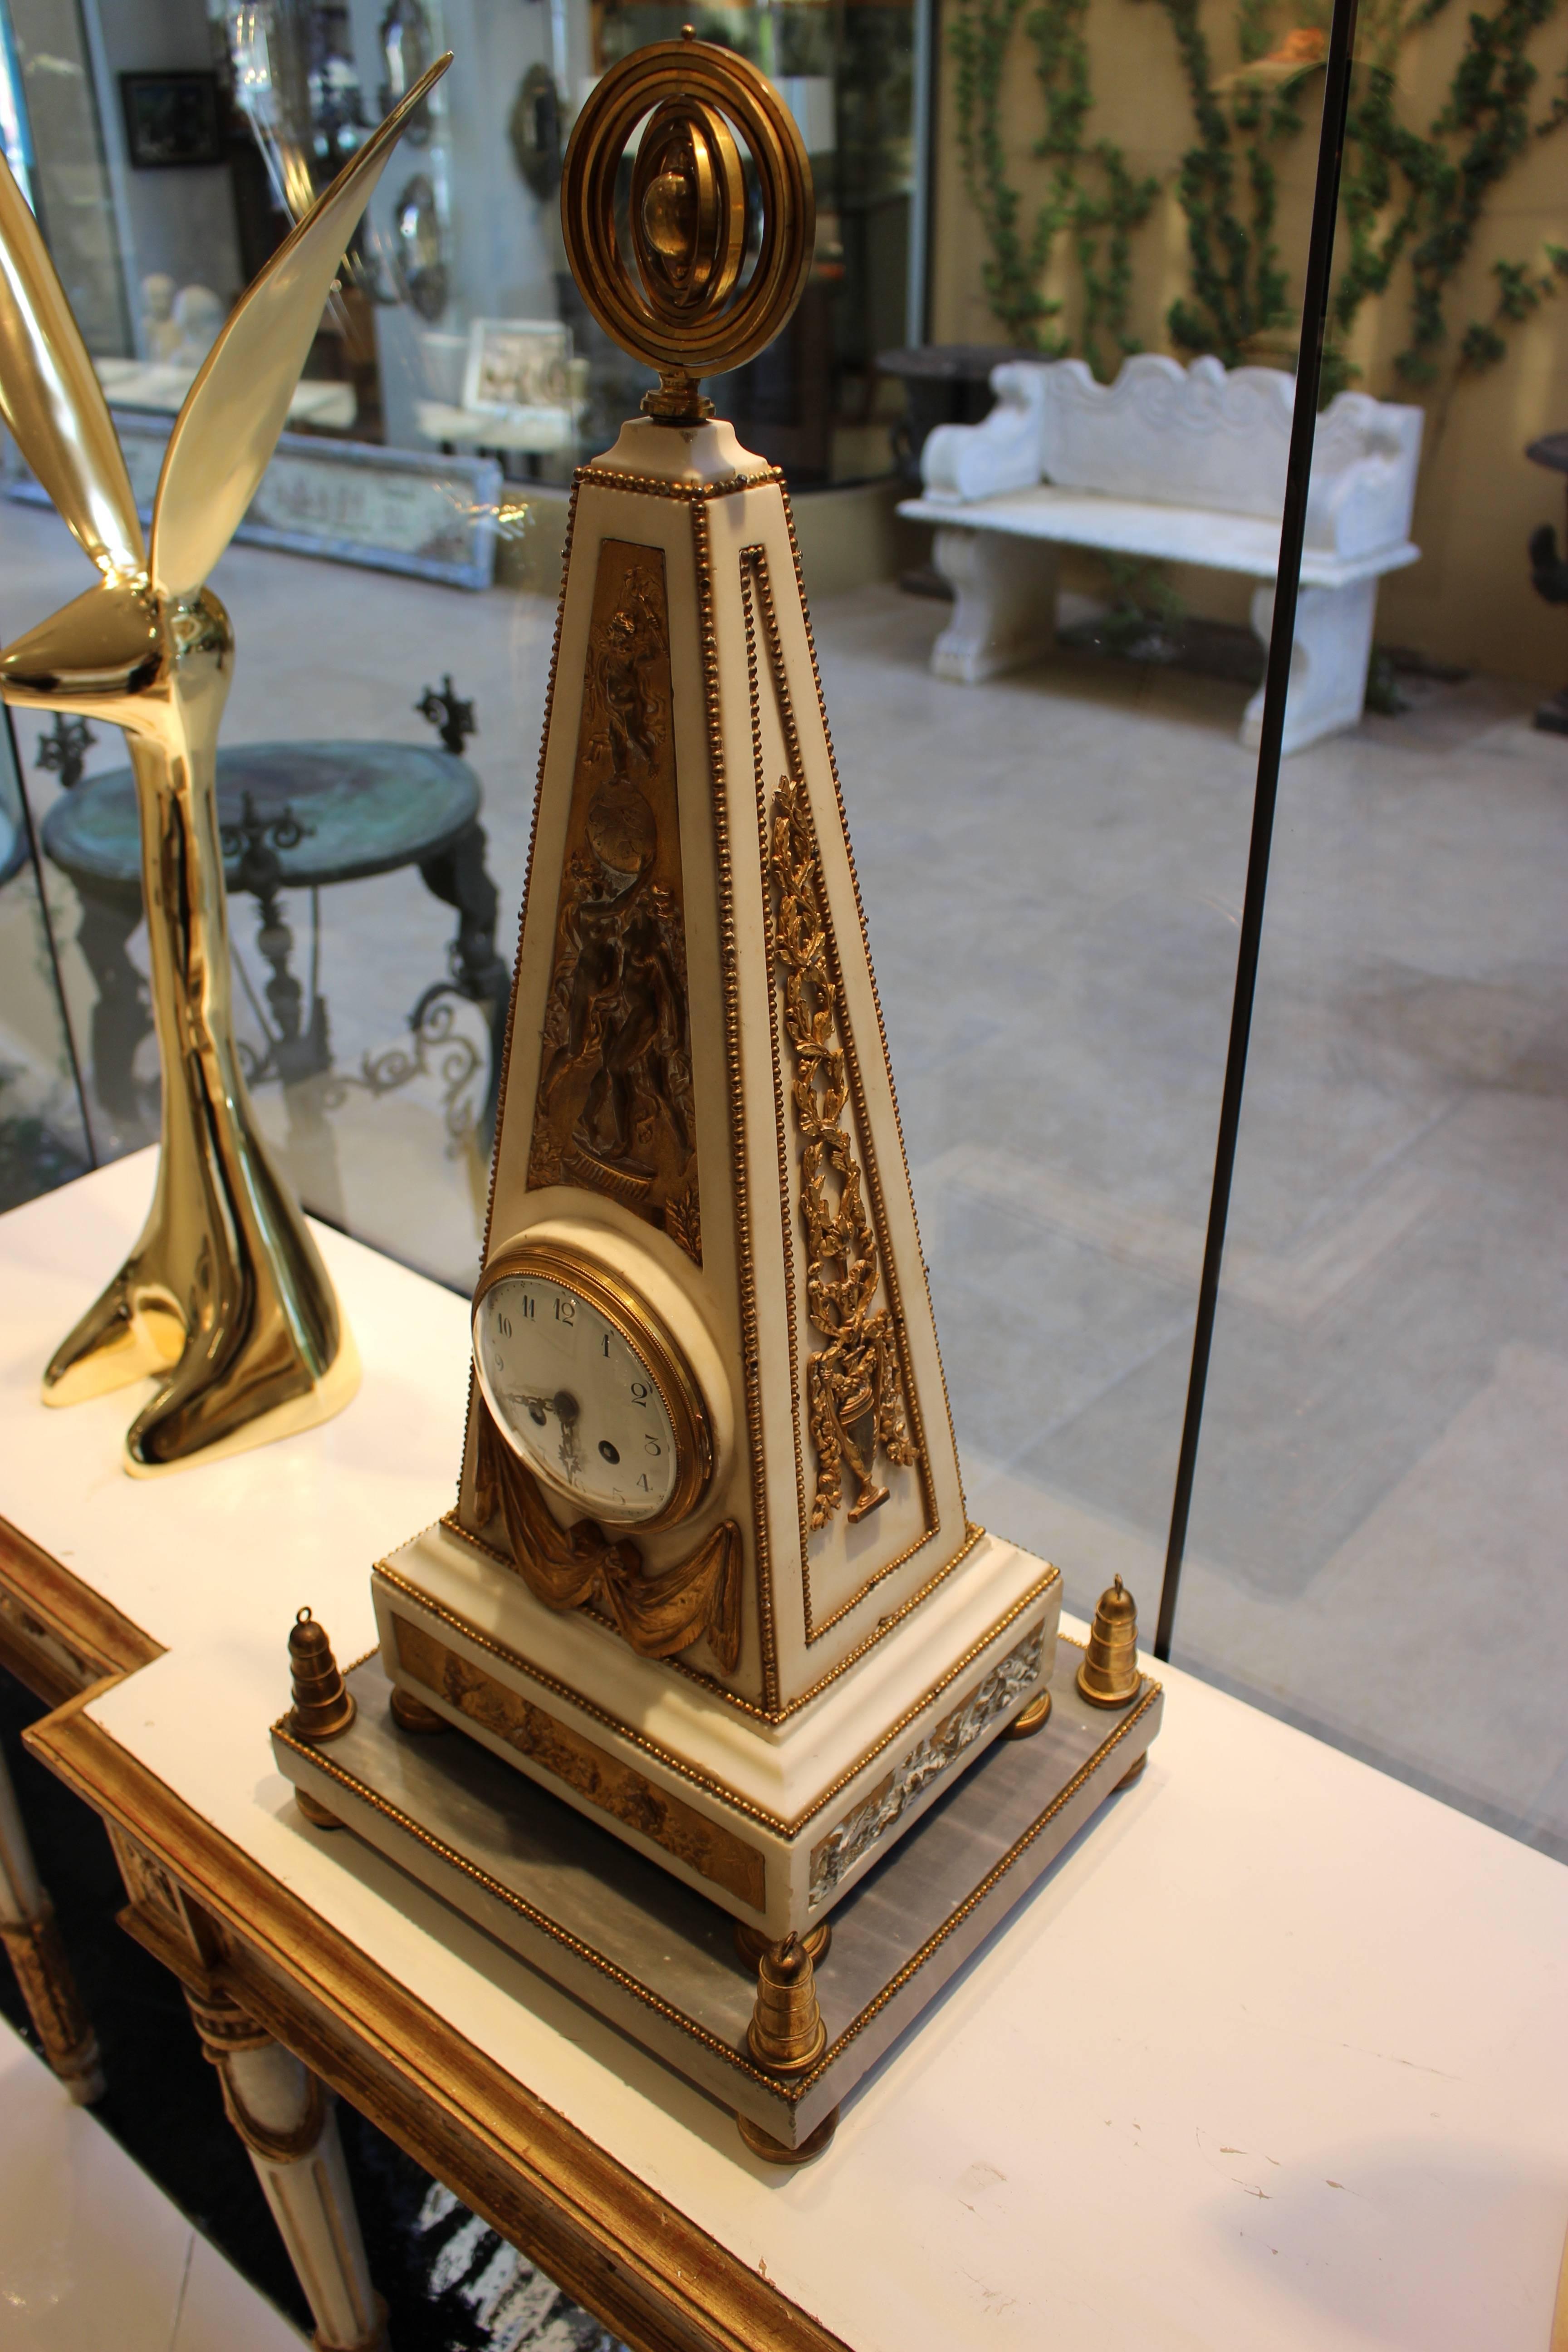 Pendule de cheminée en marbre blanc français de forme obélisque avec décorations en bronze doré de style Louis XVI. Le cadran émaillé avec chiffres arabes et aiguilles dorées percées est enfermé dans un boîtier obélisque en marbre blanc surmonté